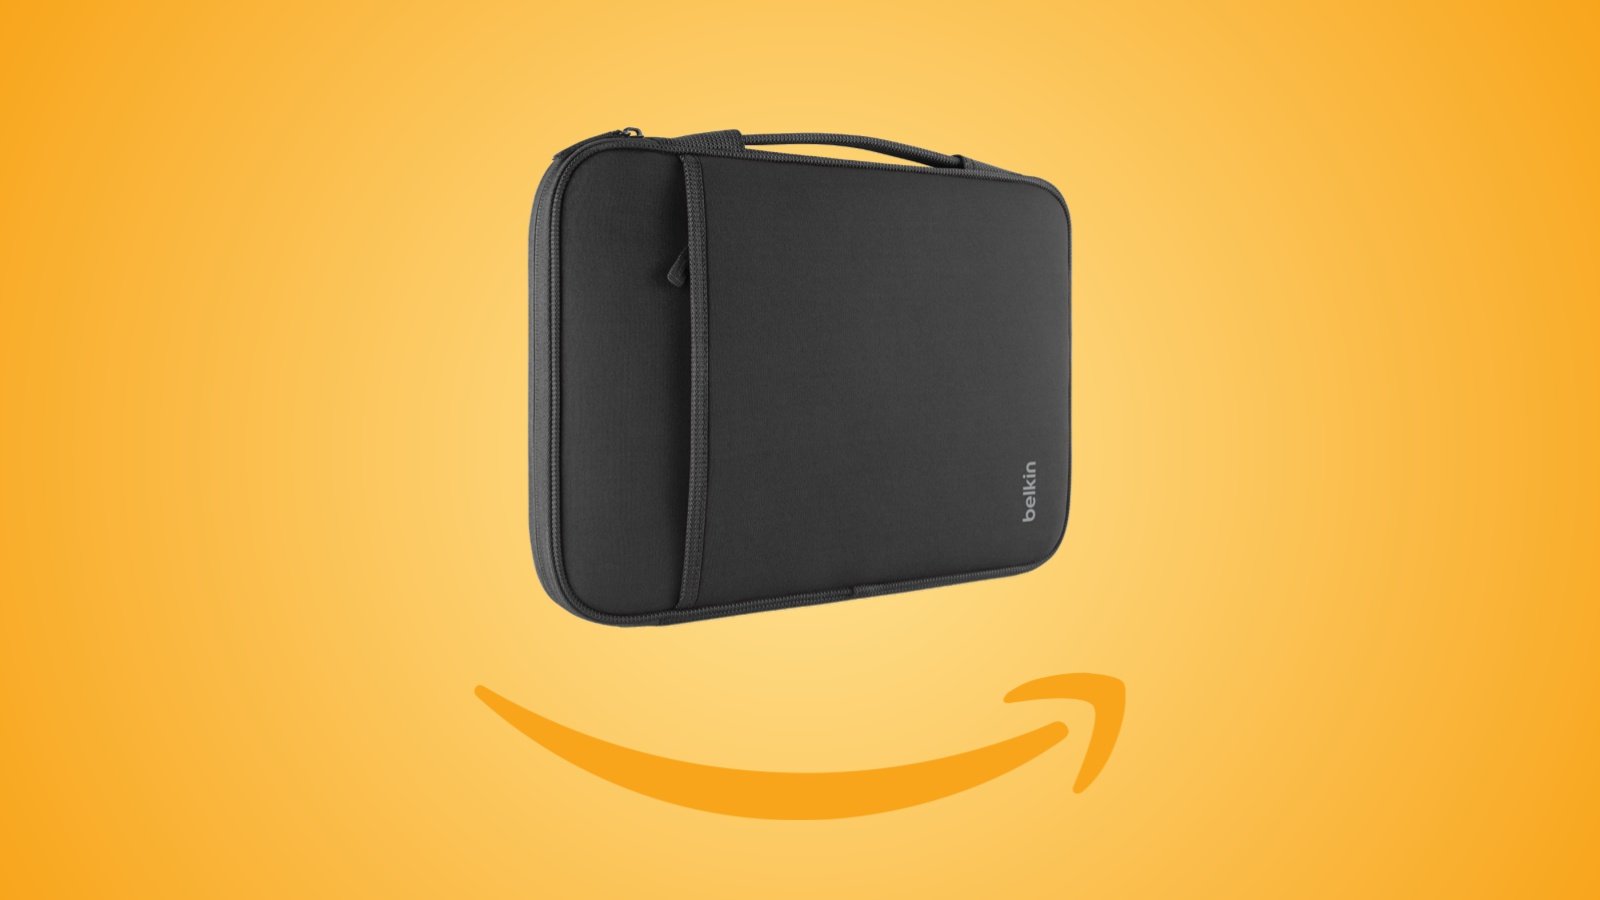 Offerte Amazon: borsa protettiva Belkin per MacBook Air 13' in sconto al prezzo minimo storico